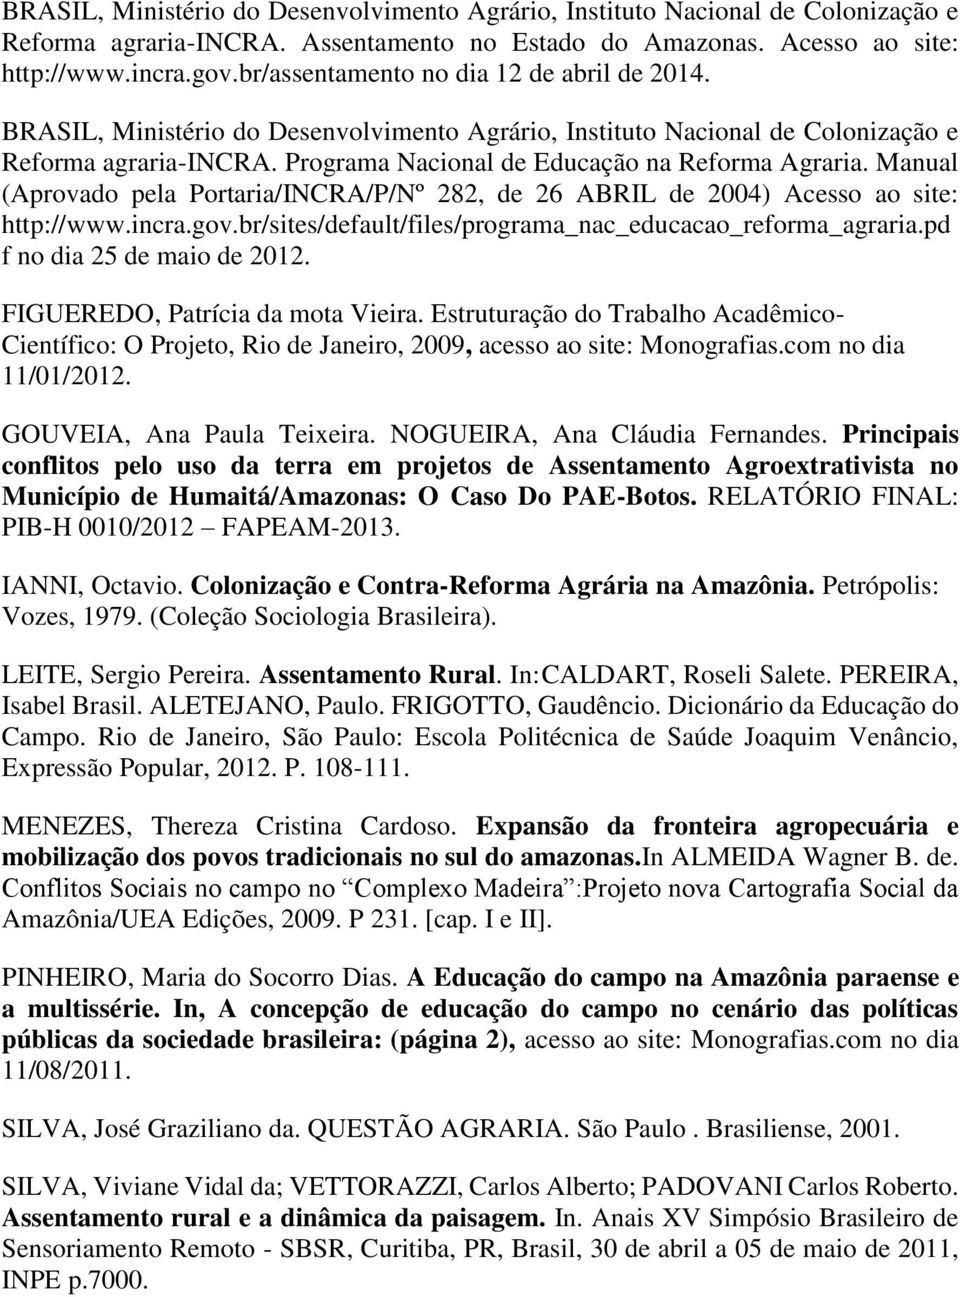 Manual (Aprovado pela Portaria/INCRA/P/Nº 282, de 26 ABRIL de 2004) Acesso ao site: http://www.incra.gov.br/sites/default/files/programa_nac_educacao_reforma_agraria.pd f no dia 25 de maio de 2012.